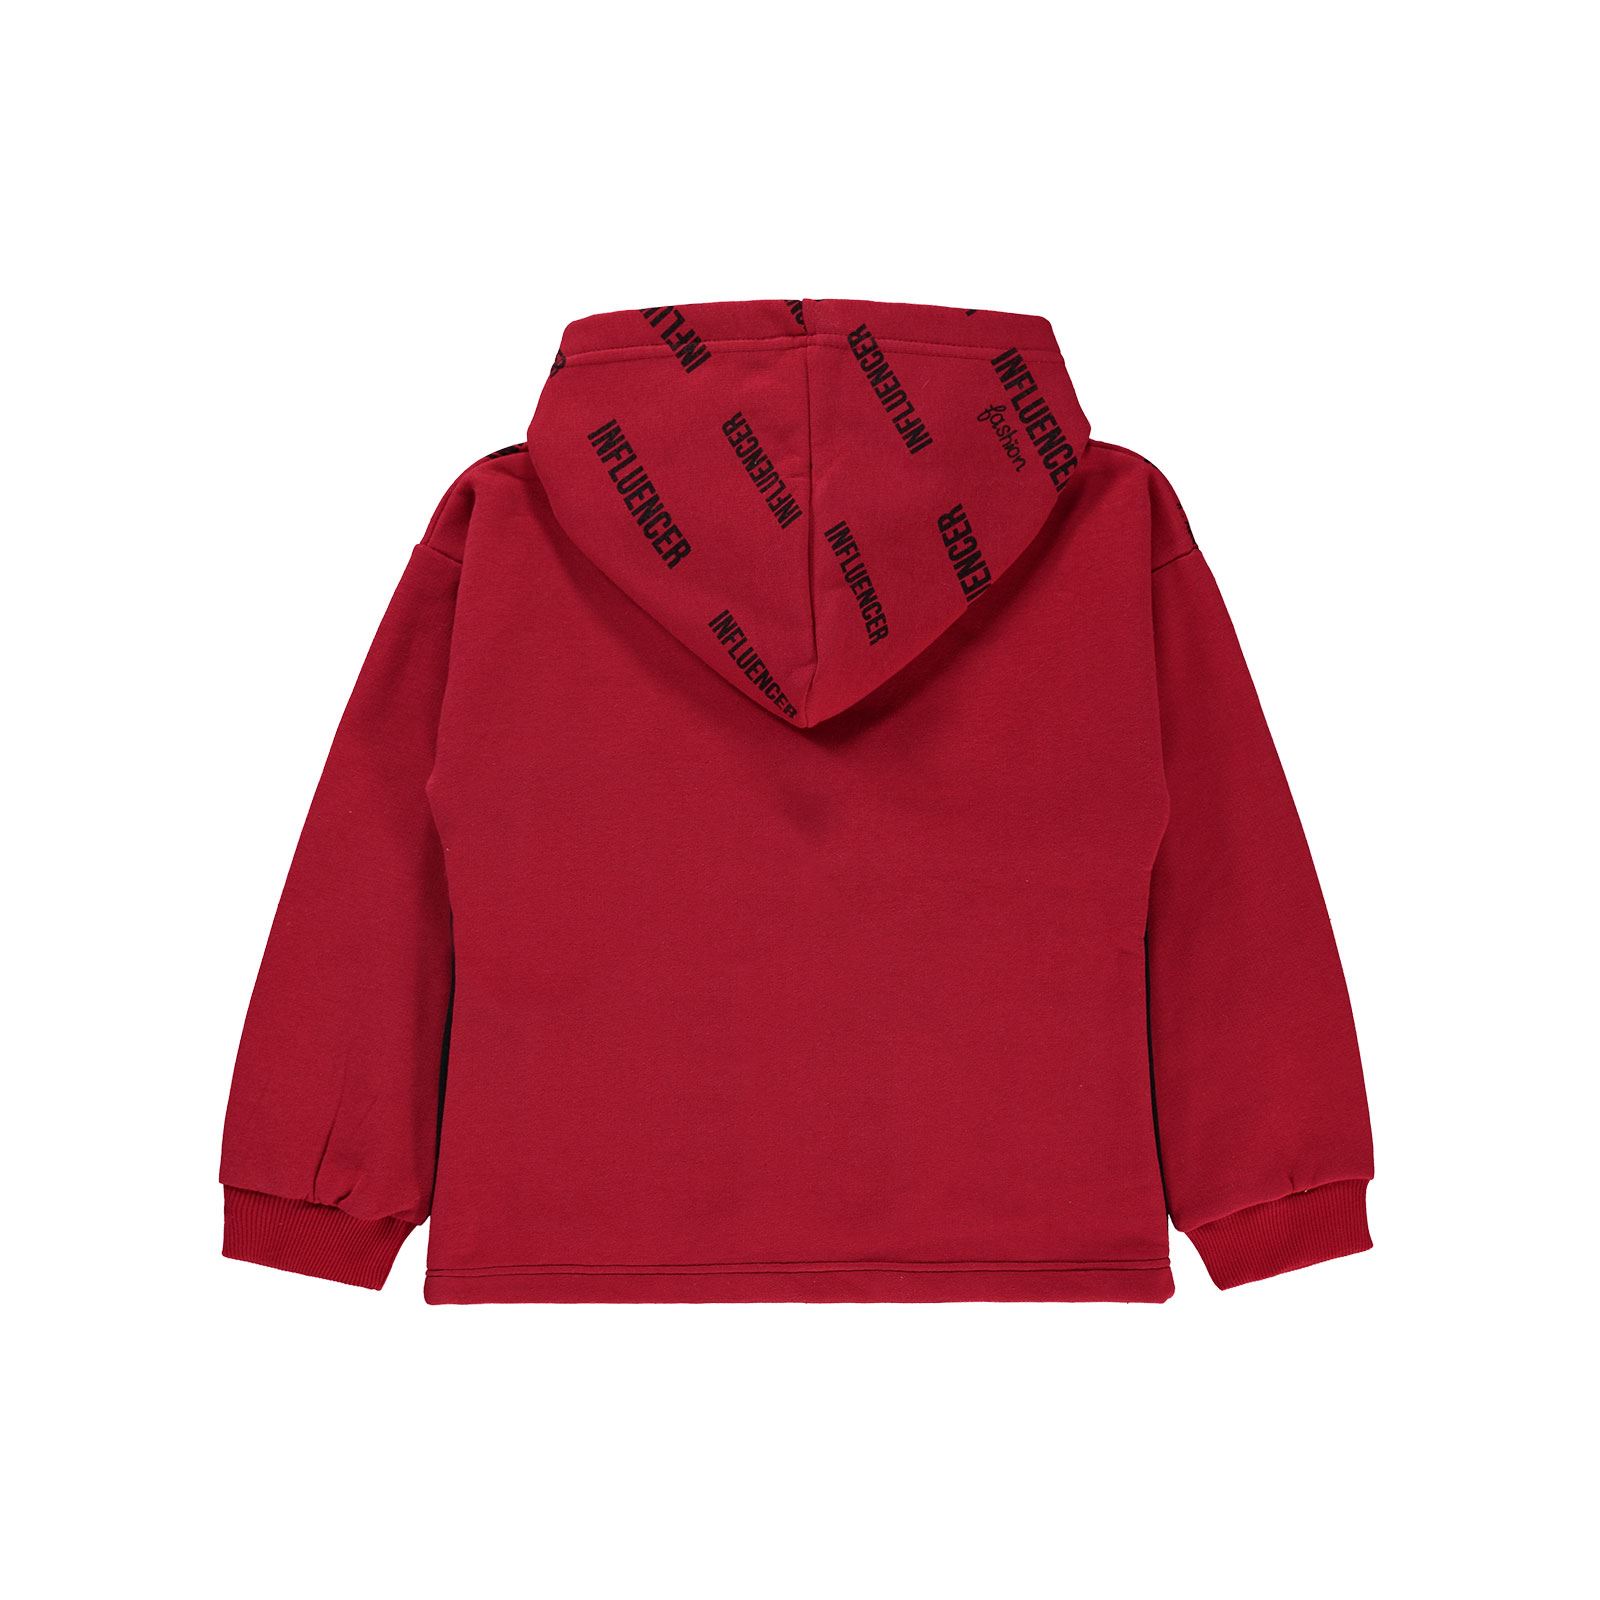 Tufyy Kız Çocuk Sweatshirt 9-12 Yaş Kırmızı